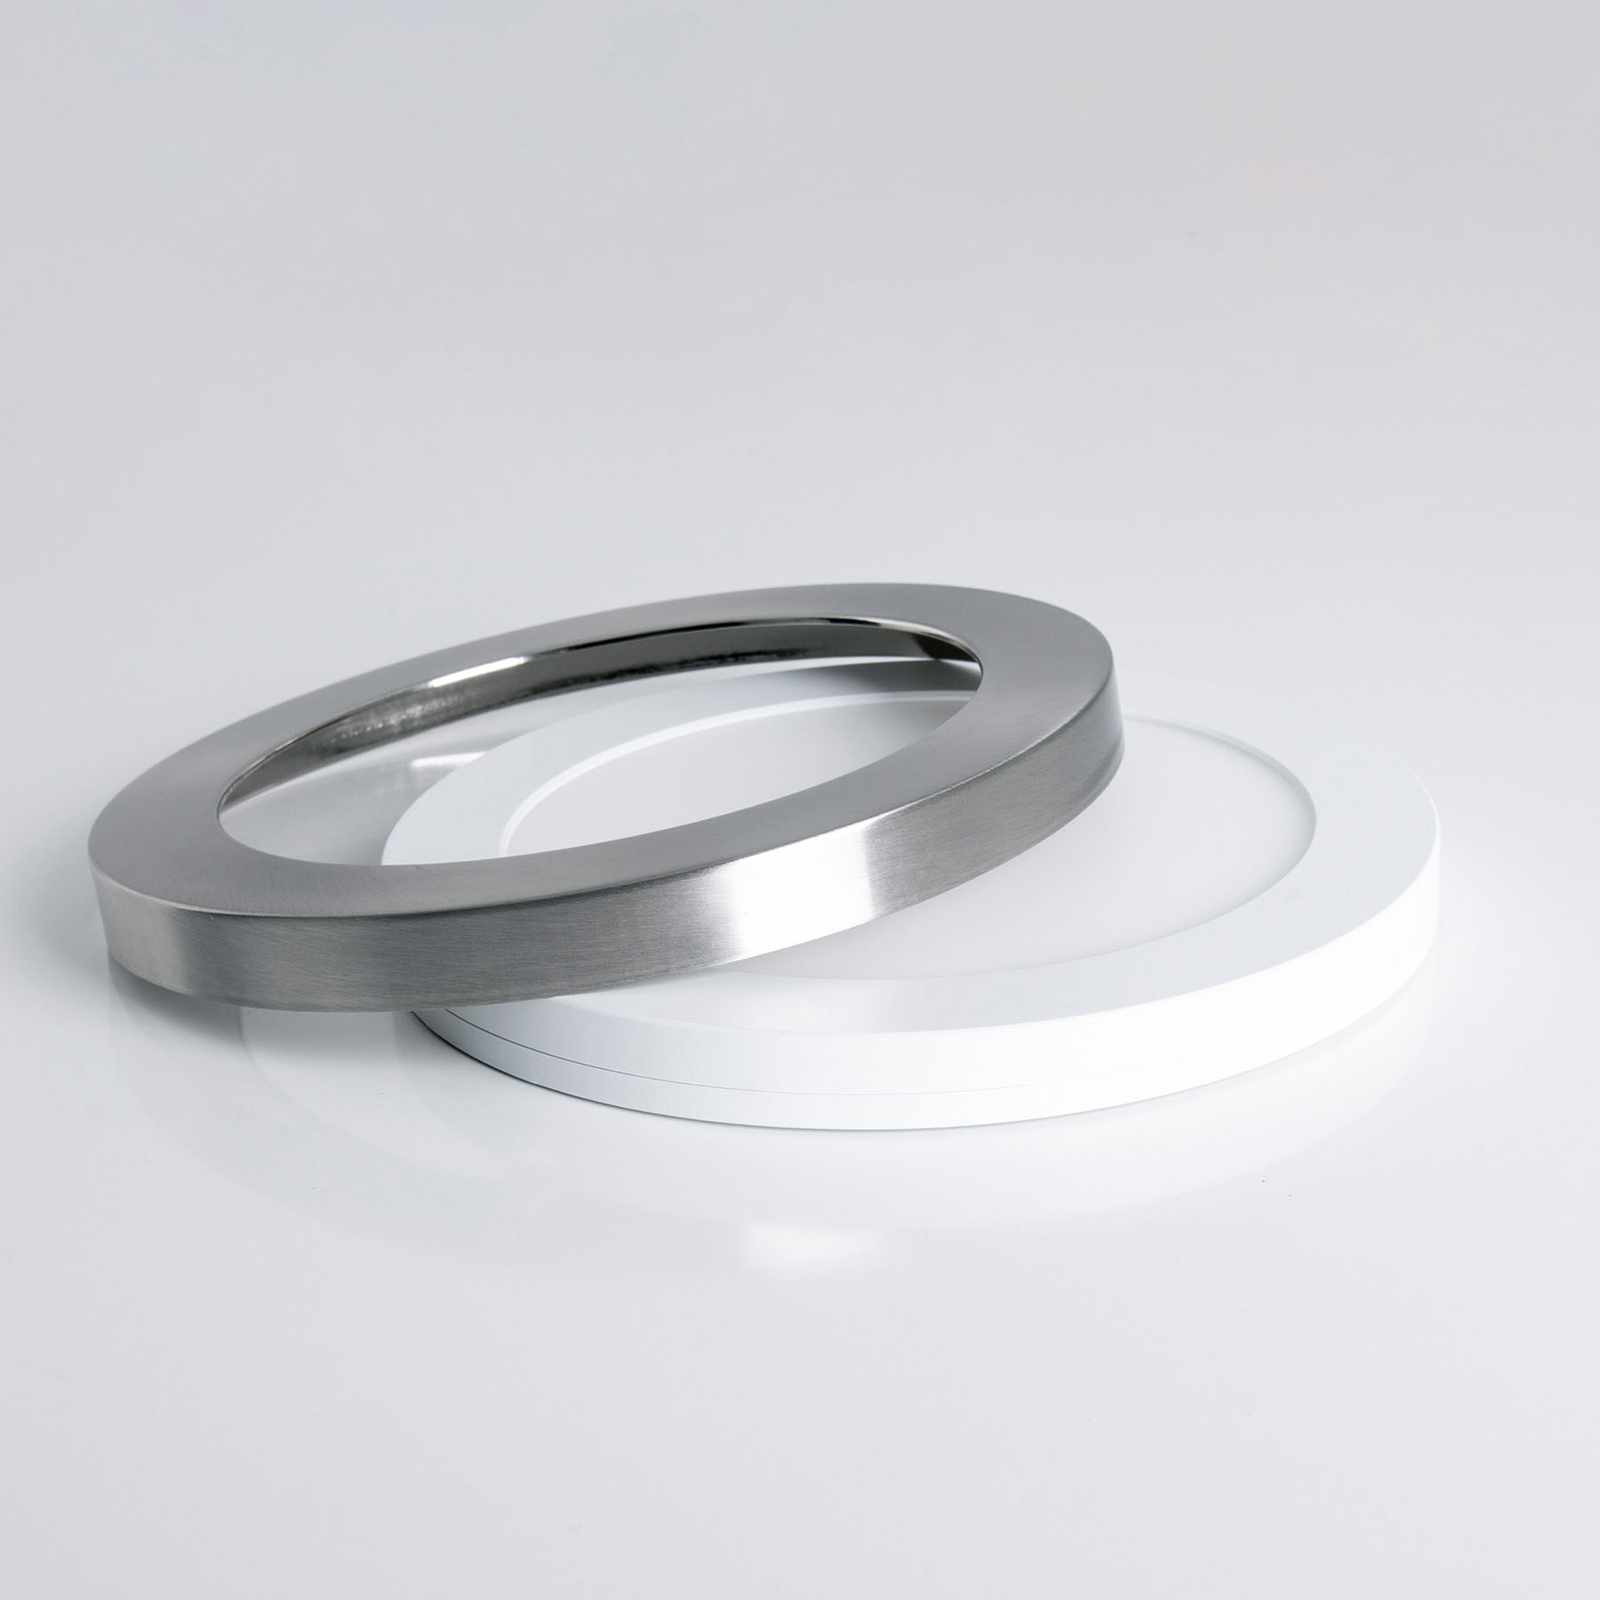 LED plafondlamp Bonus, magnetische ring Ø 22,5 cm